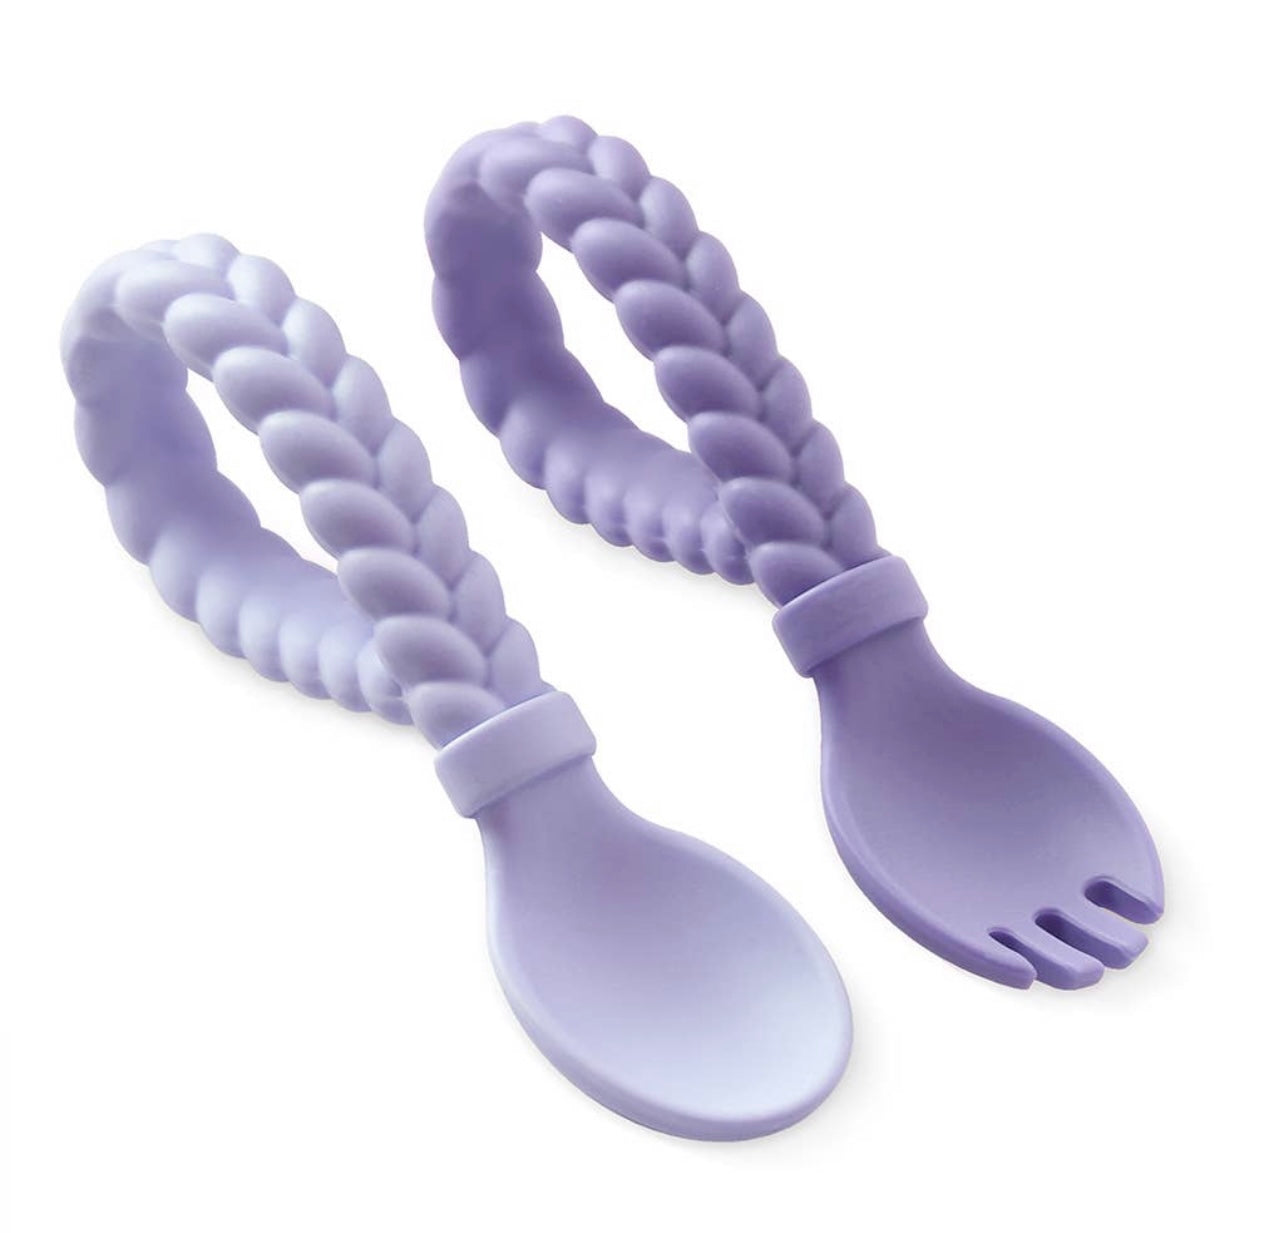 Sweetie Spoons Spoon + Fork Set (6 colors)